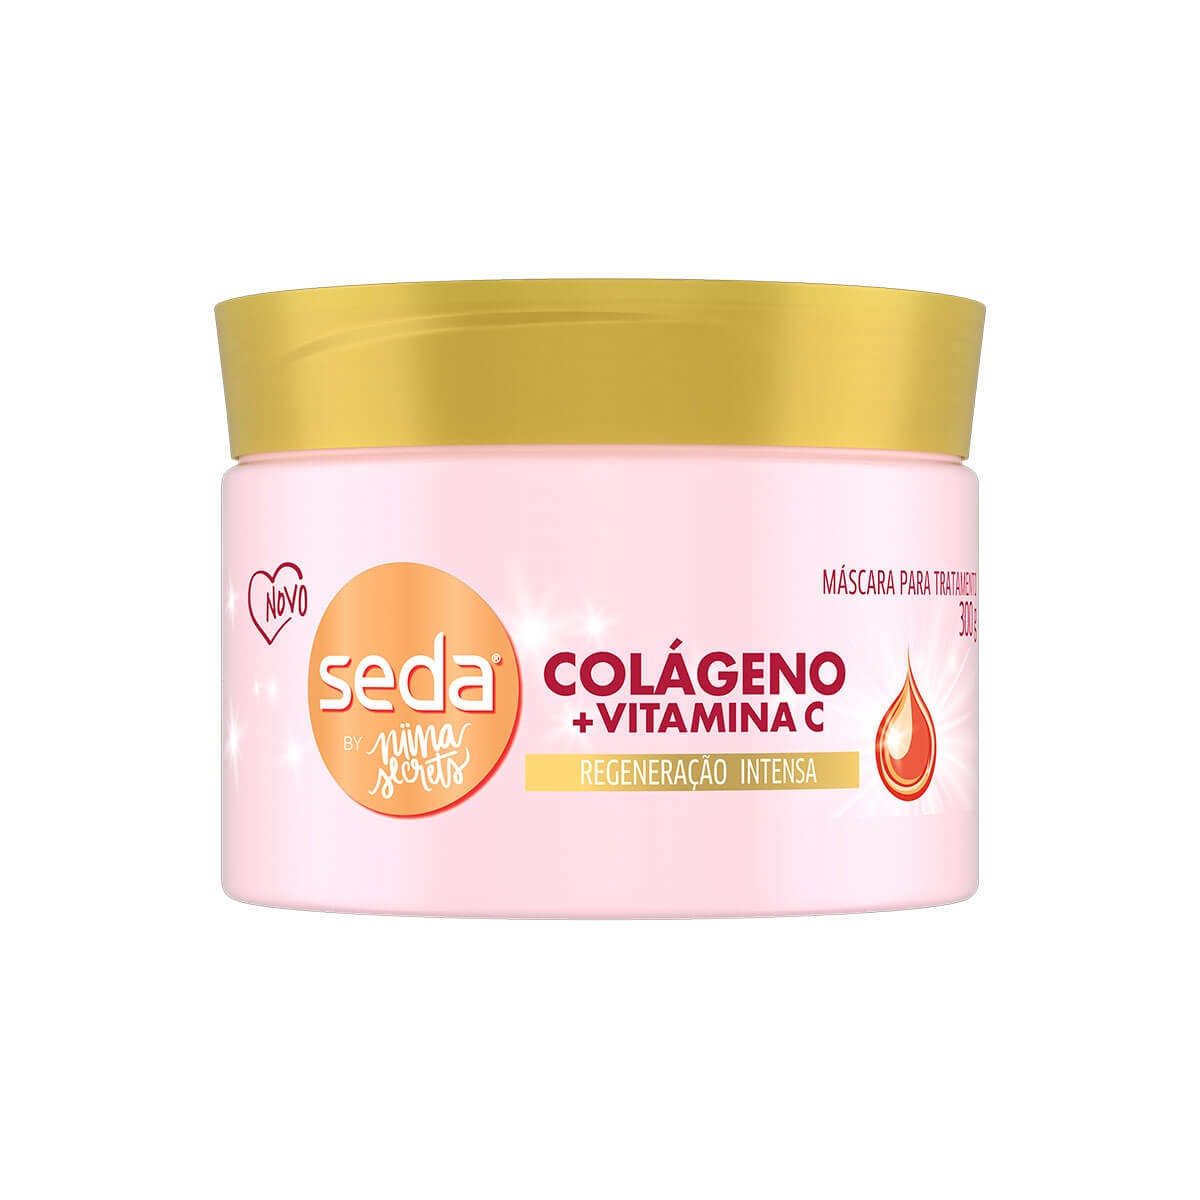 Máscara de Tratamento Seda by Niina Secrets Colágeno e Vitamina C com 300g 300g